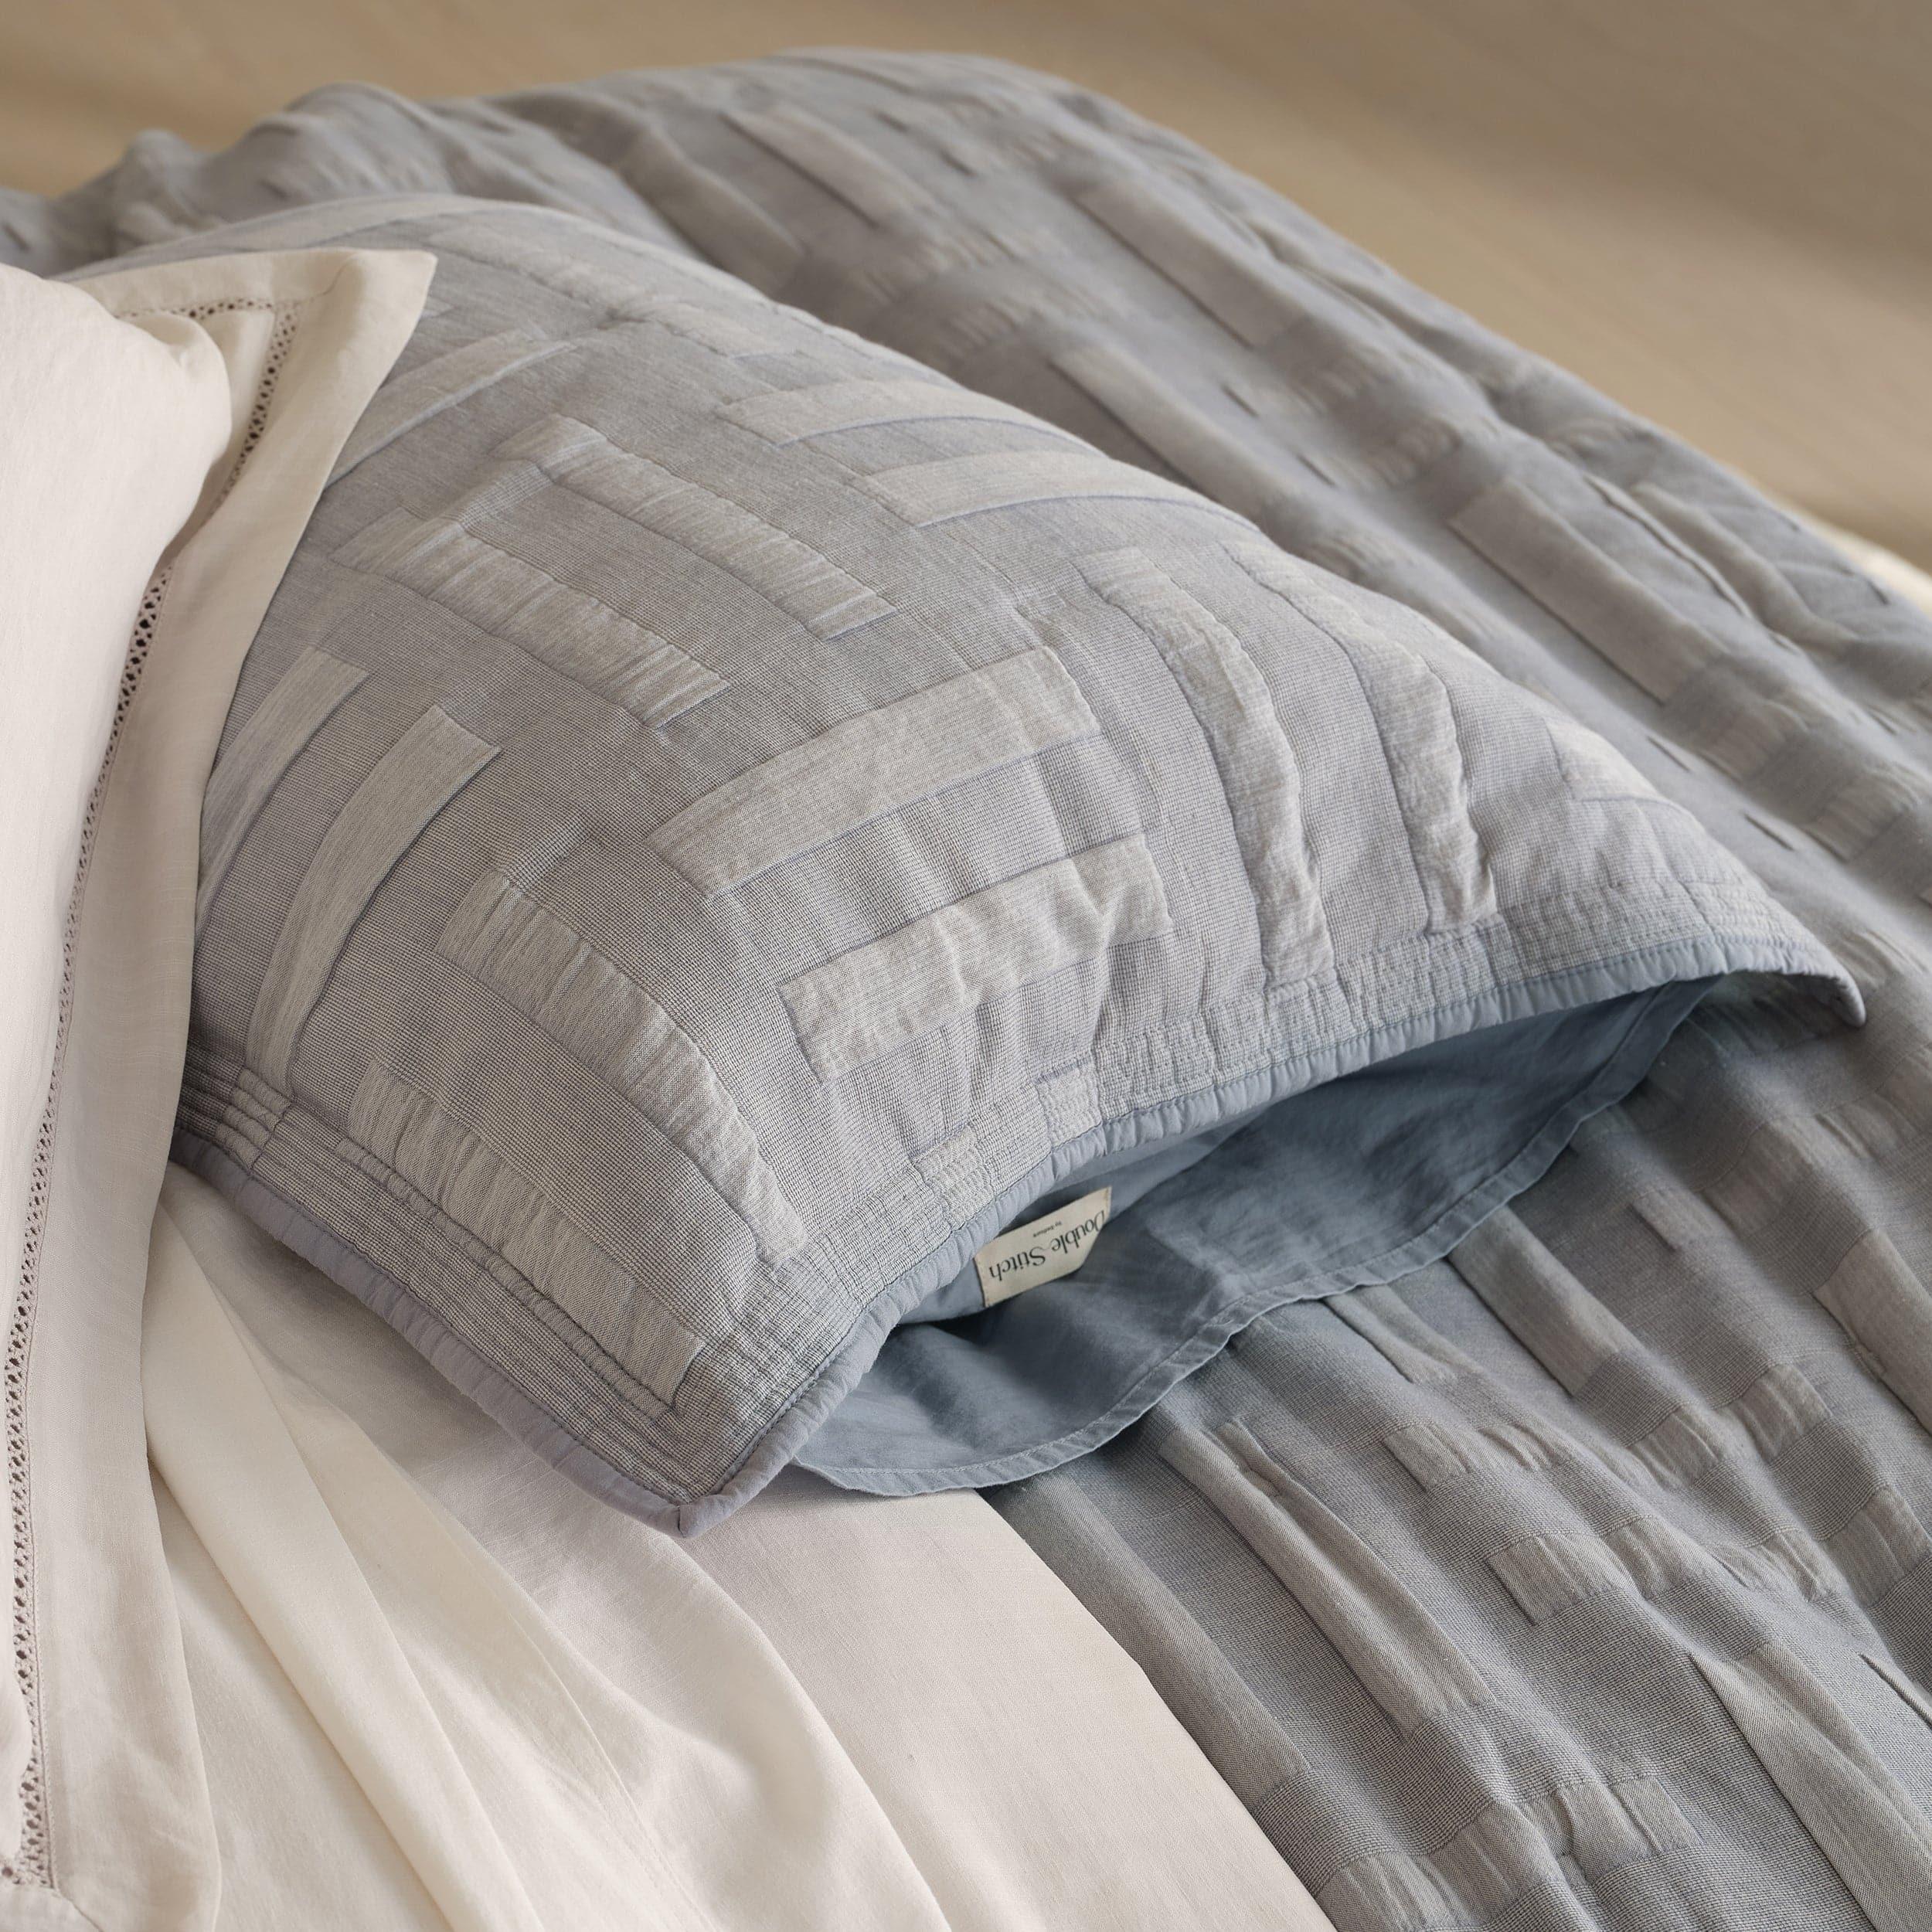 Cotton Jacquard Quilt Set - Double Stitch By Bedsure